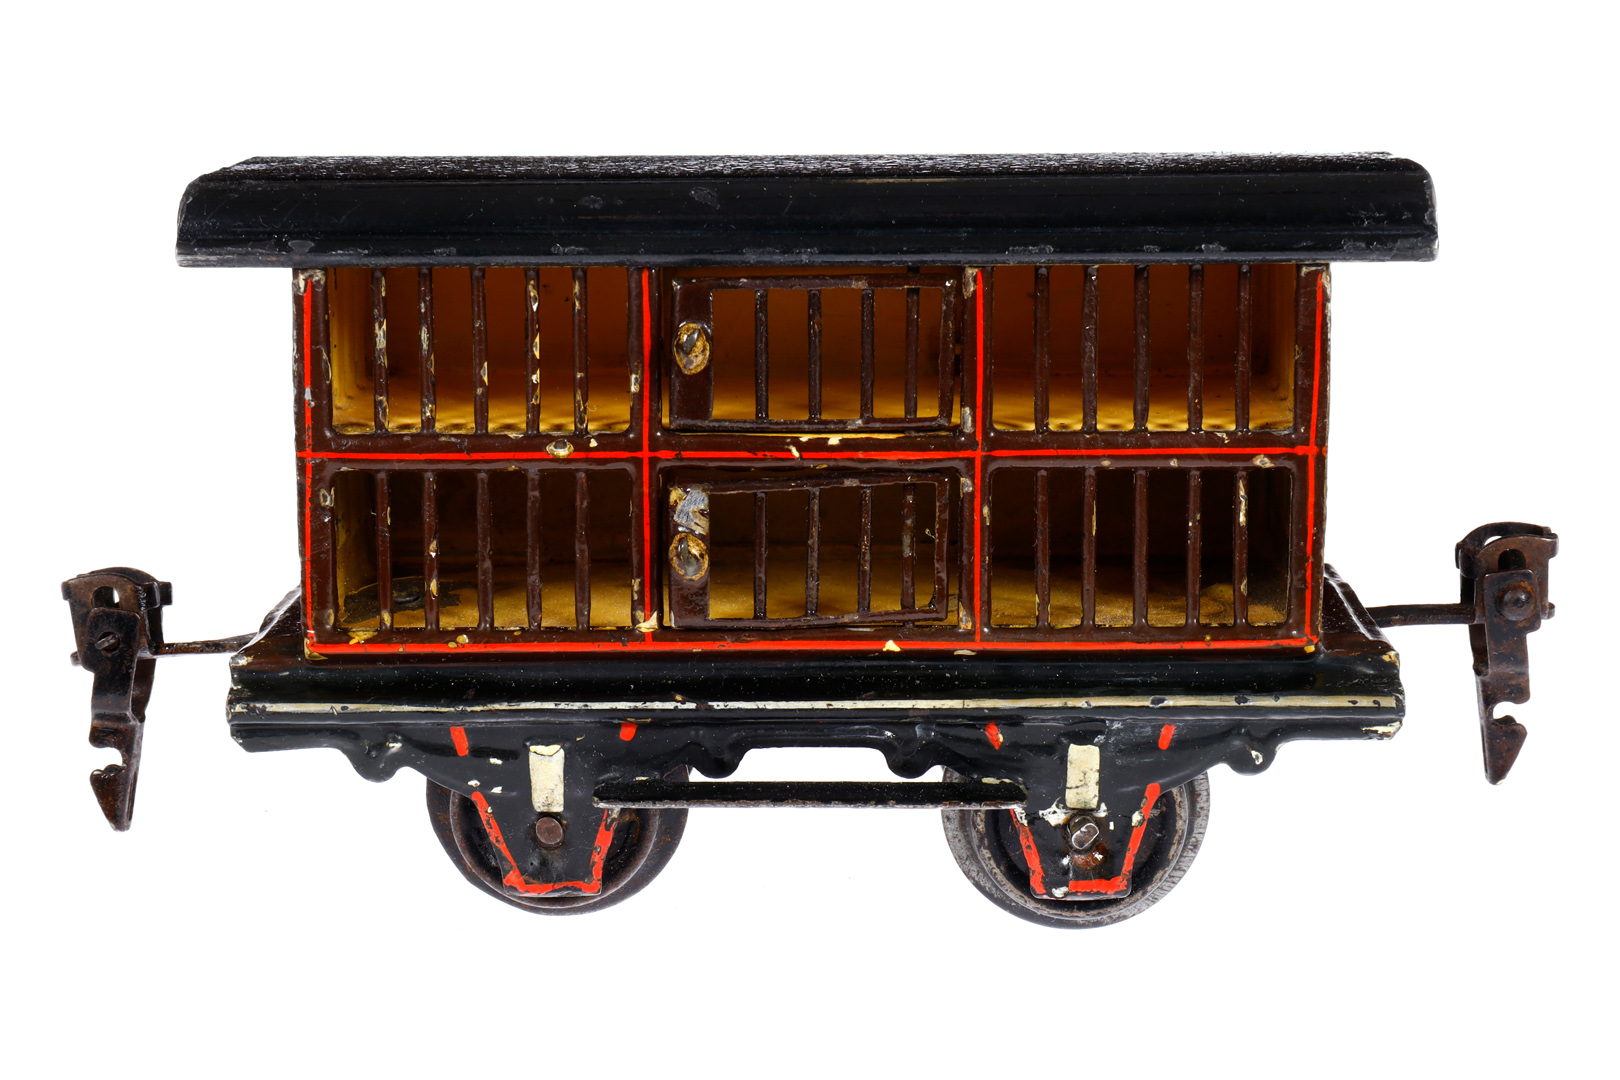 Märklin Kleintierwagen 1911, Spur 0, uralt, HL, mit 1 ST und 2 LT (Arretierungen fehlen), kleine